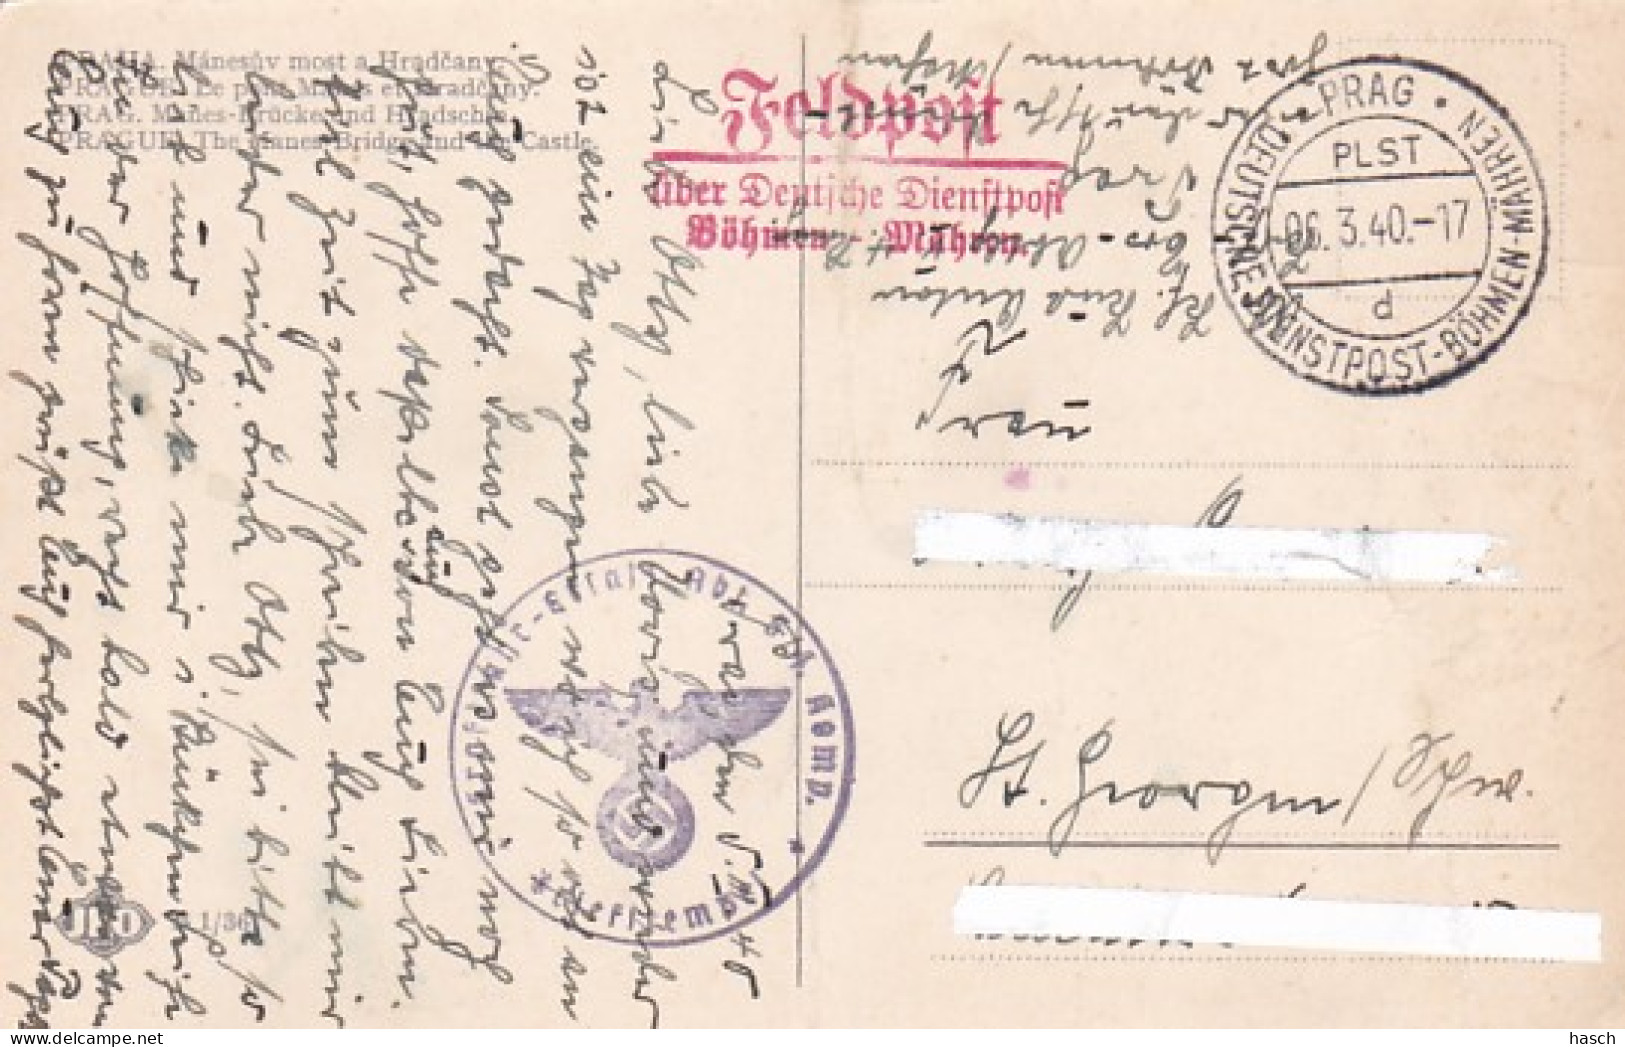 4814 58  Feldpost über DeutscheDienstpost  Böhmen-Mähren. Stempel: Pragd / 06.3.40. Briefstempel  Kraftfahr-Ersatz Abt 5 - Briefe